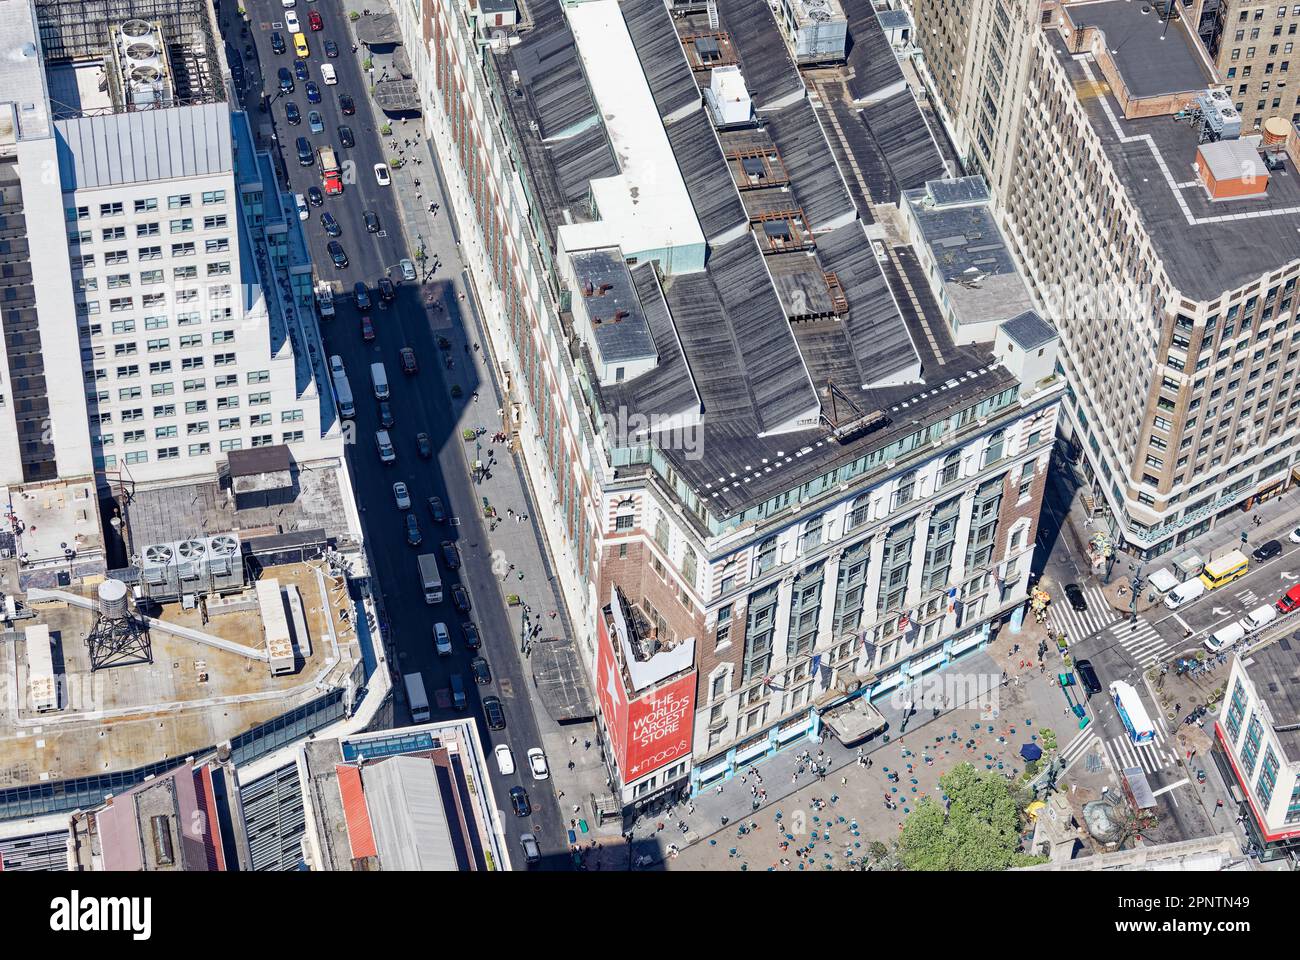 Macy's Herald Square, ein bekanntes Kaufhaus, hat nie das winzige Holdout in der Ecke erworben, obwohl sie eine dreistöckige Plakatwand managten. Stockfoto